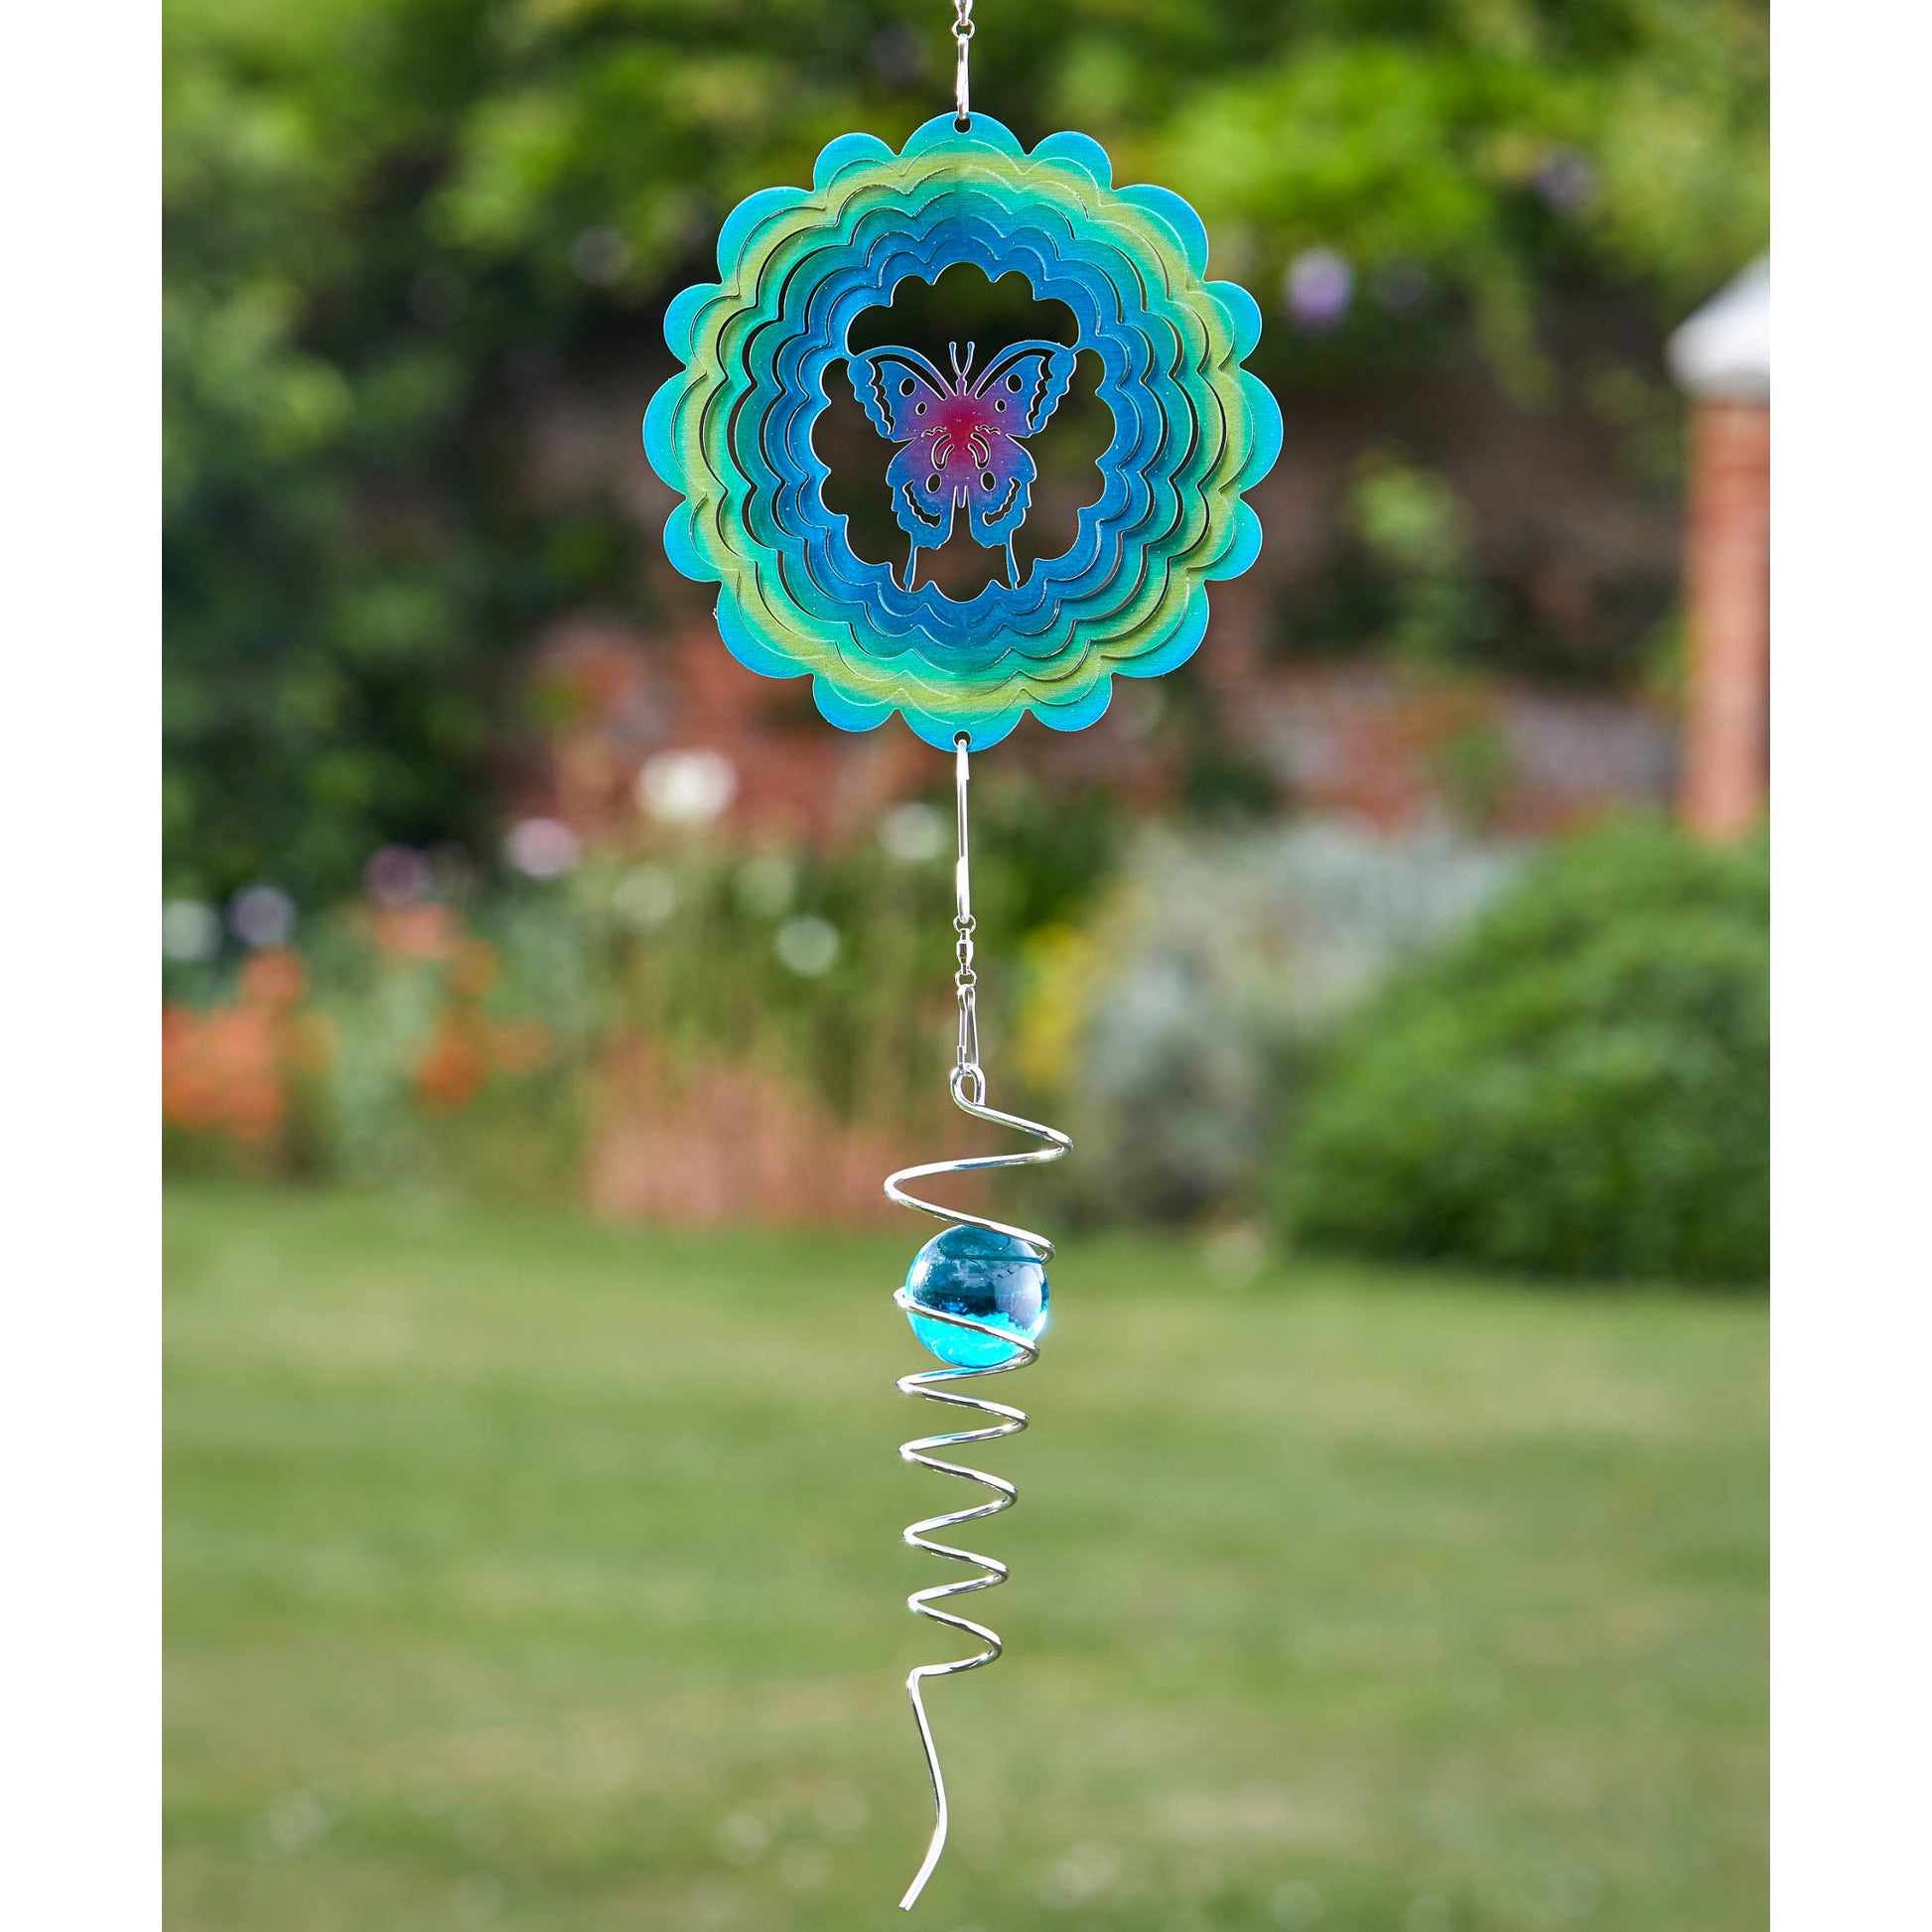 Veterný spinner motýľ a modrá špirála - dvojica výrobkov od Flamboya